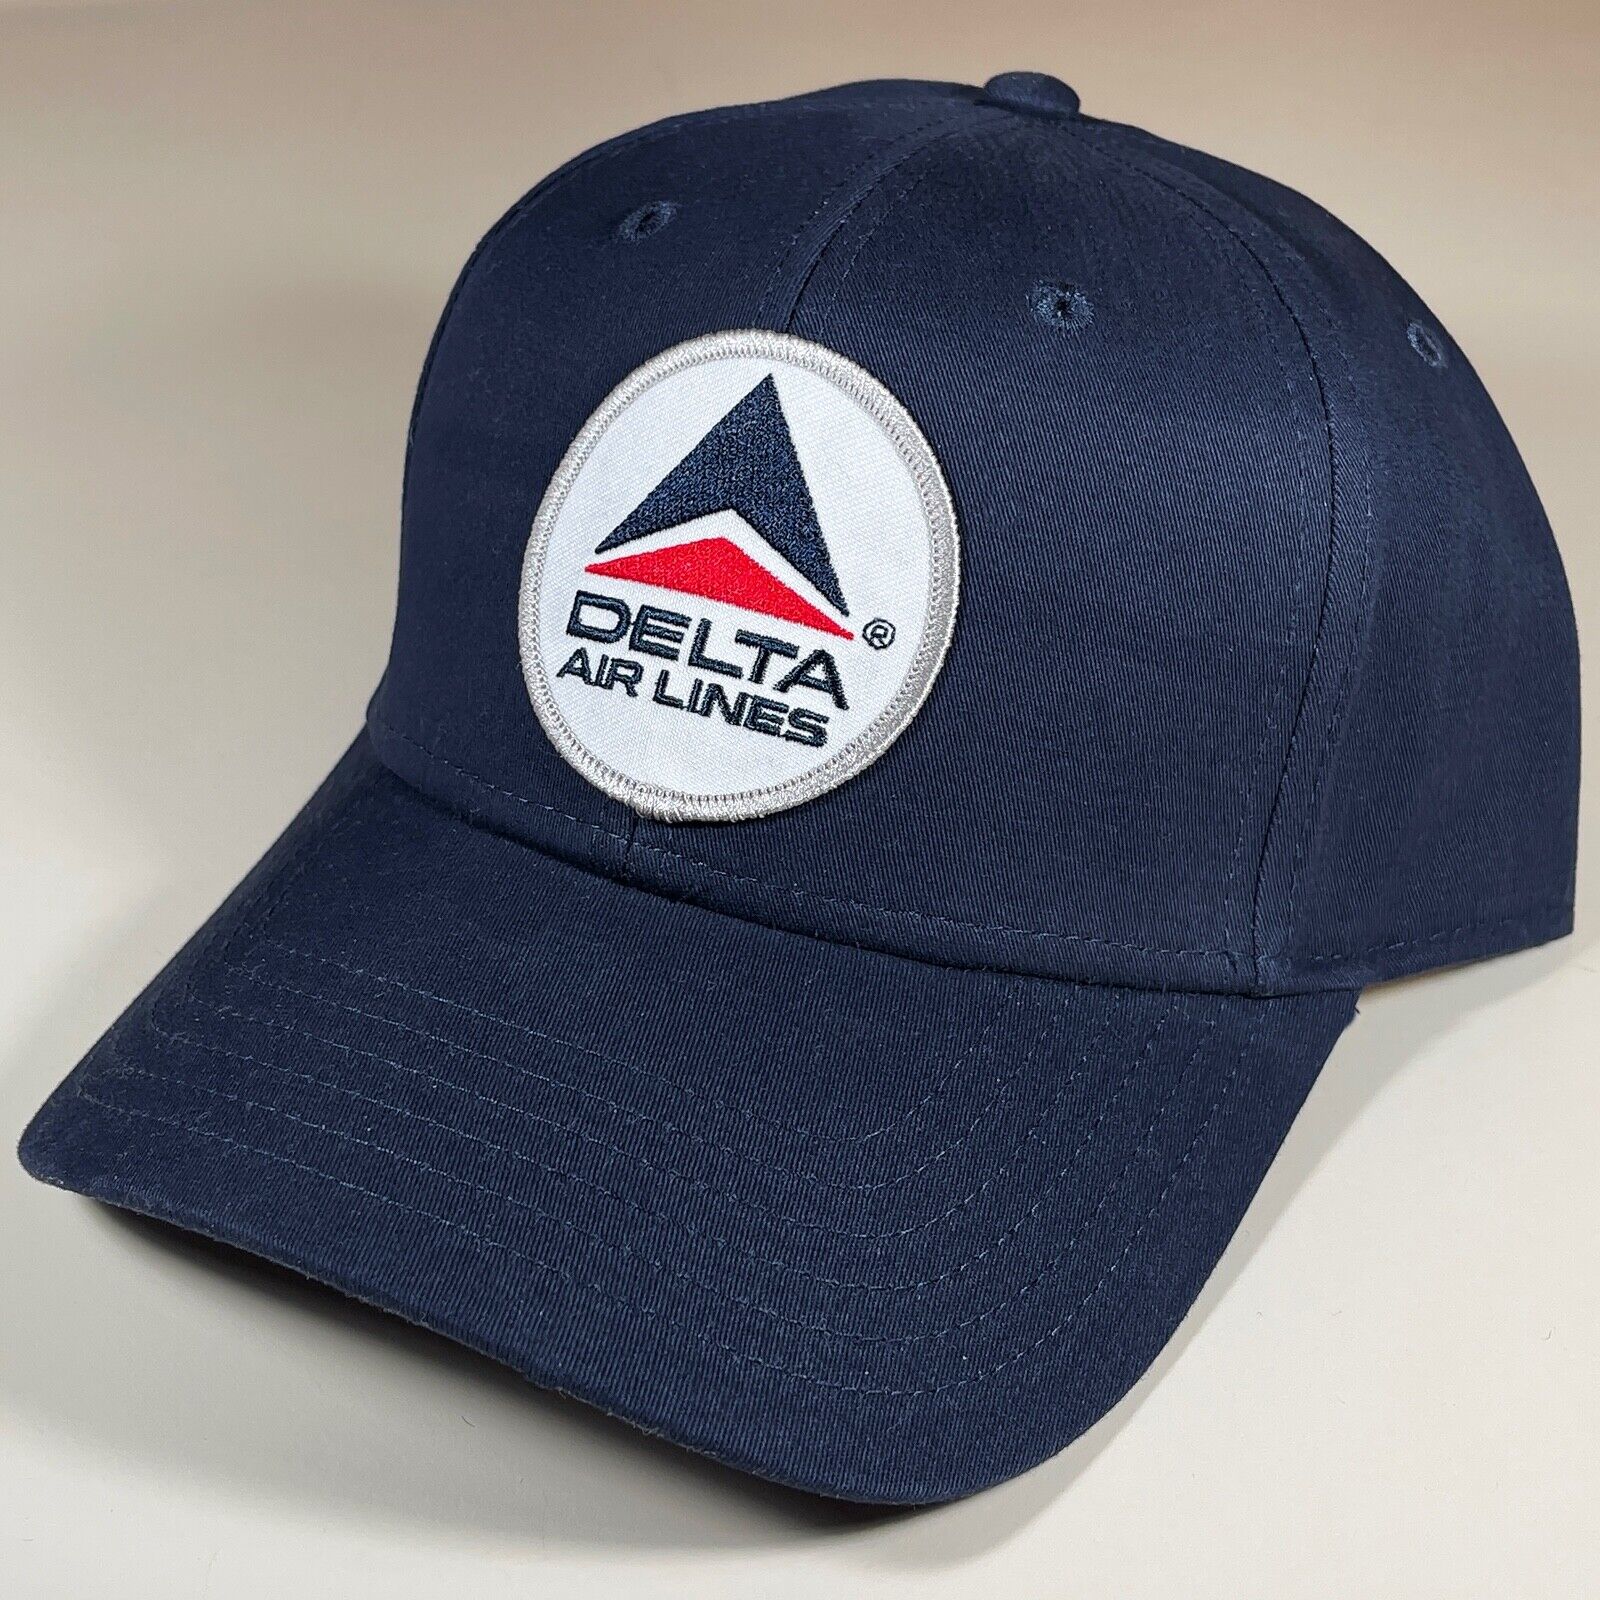 Classic Look DELTA AIRLINES CREW CAP - Brand New, Unworn, Collectible